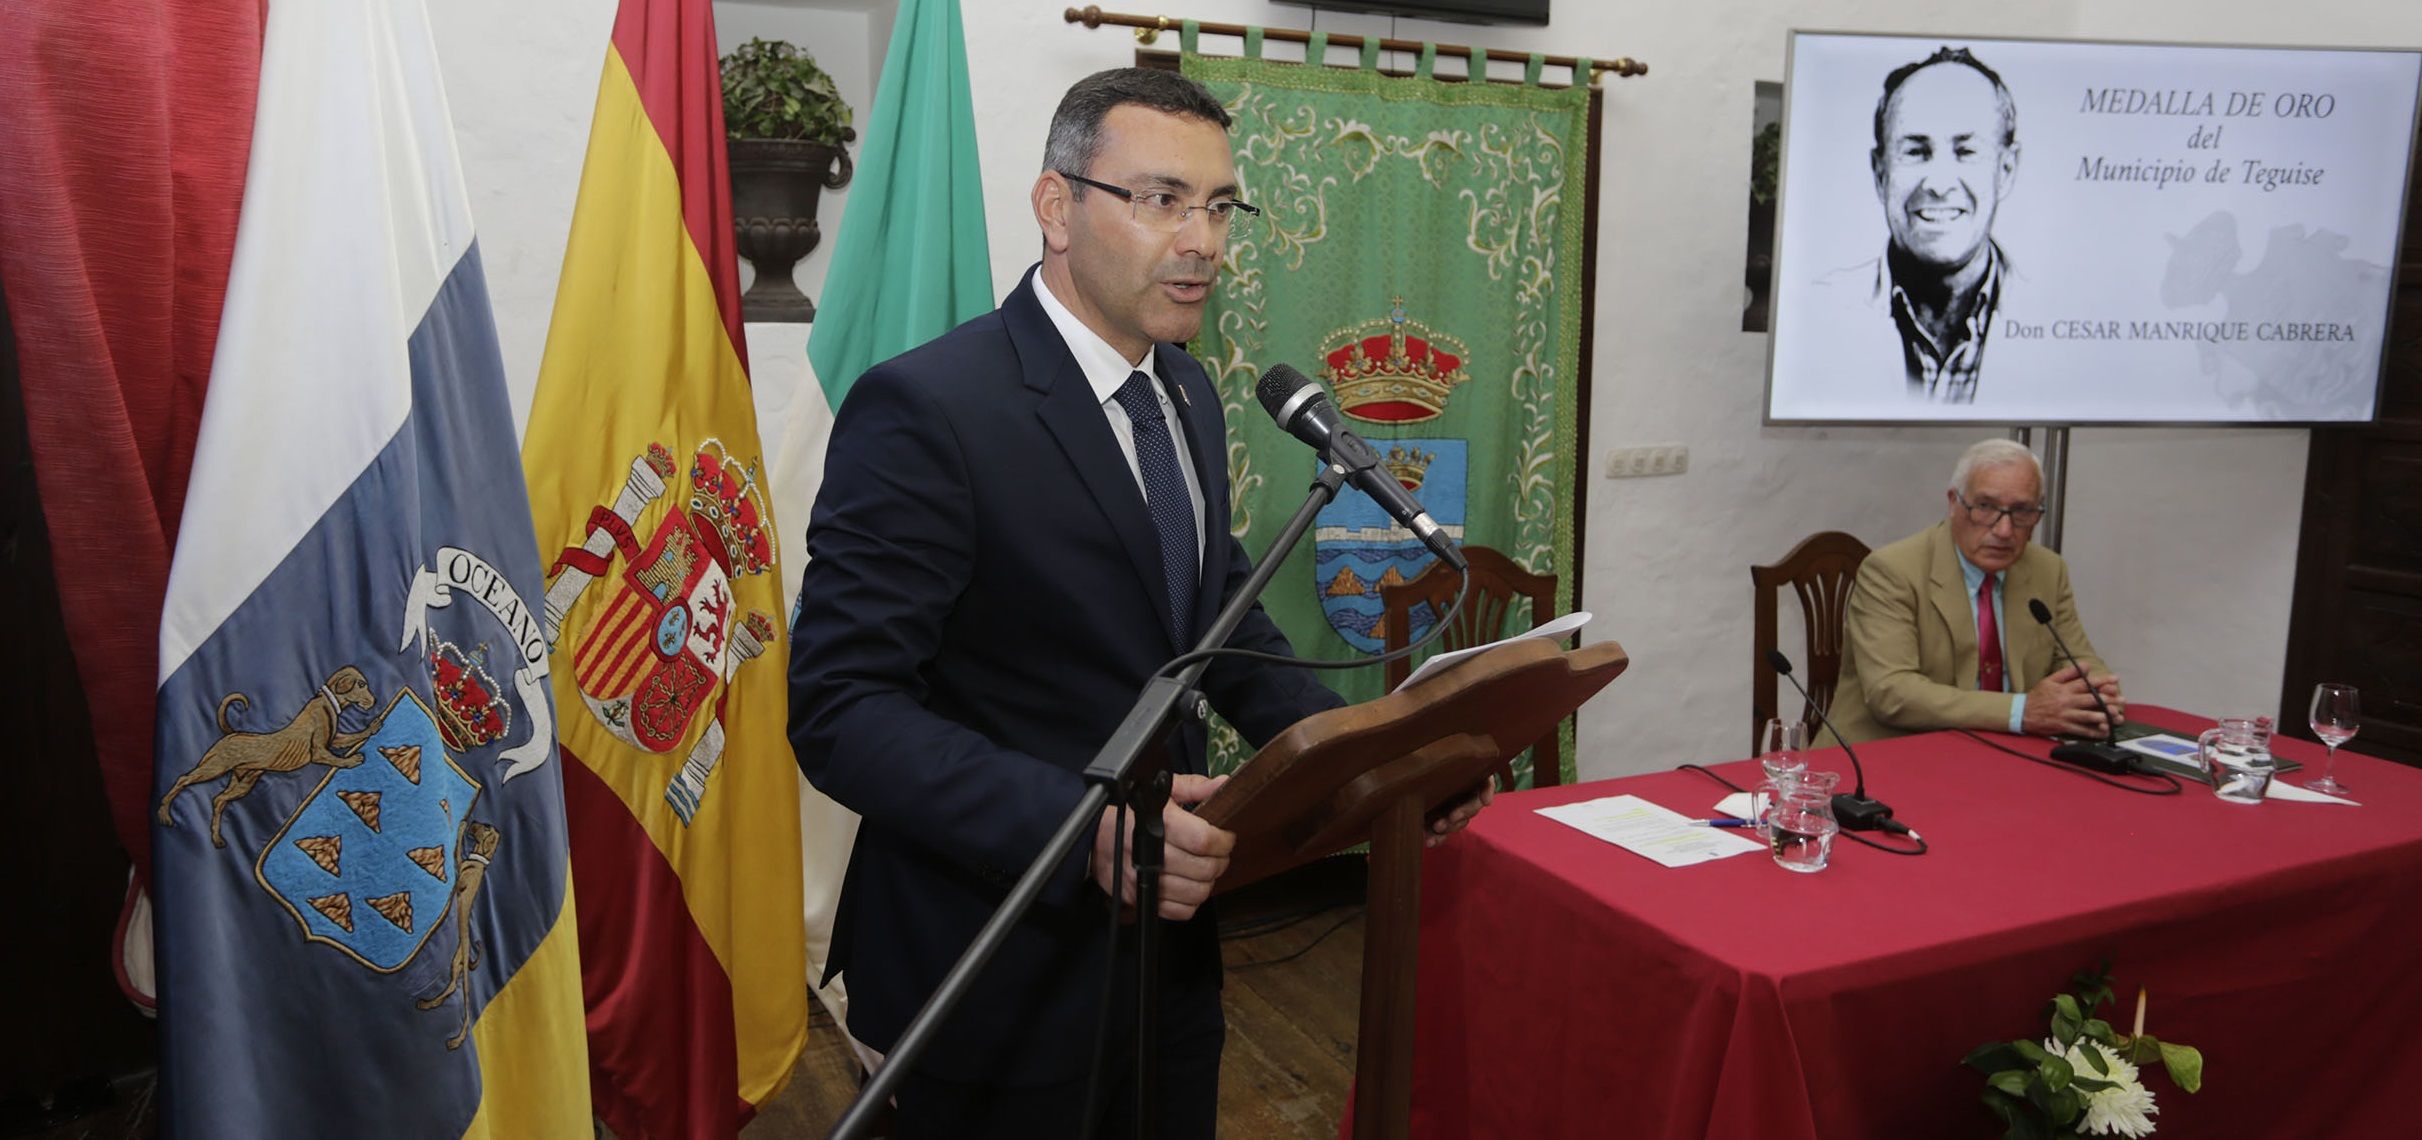 El alcalde de Teguise, Oswaldo Betancort, durante el acto de concesión de la Medalla de Oro a César Manrique